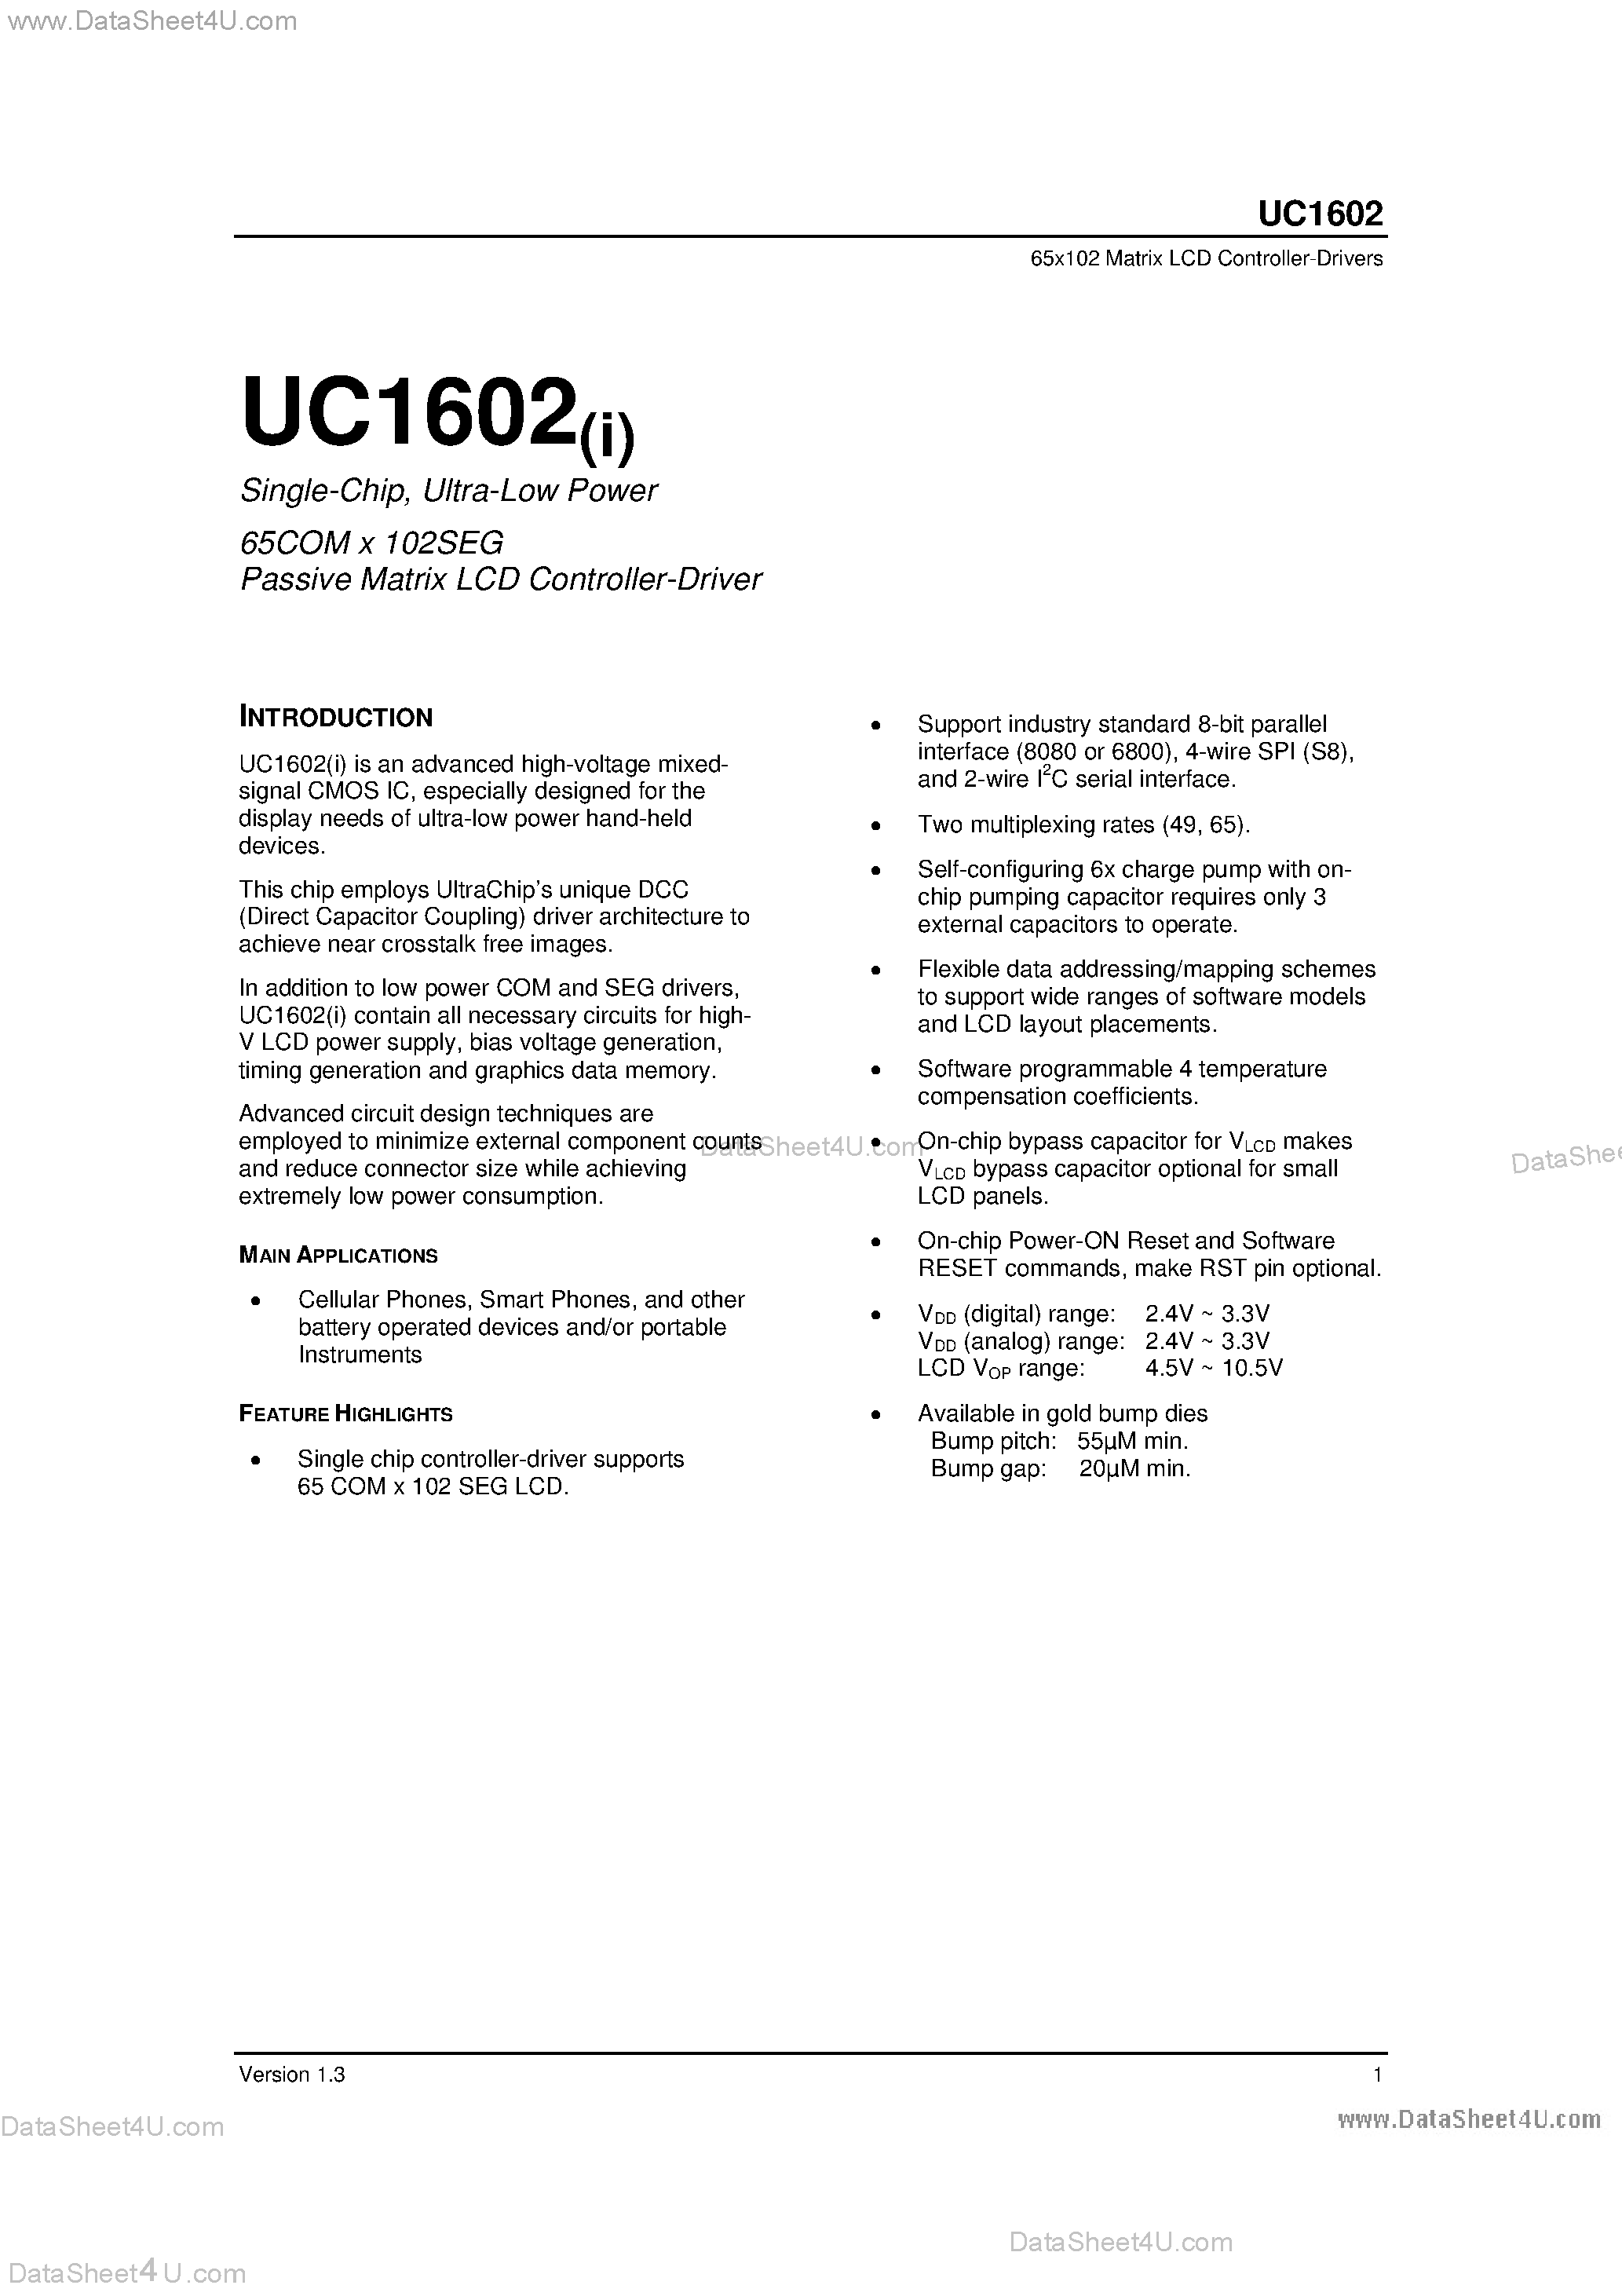 Даташит UC1602 - 65COM x 102SEG Passive Matrix LCD Controller-Driver страница 1